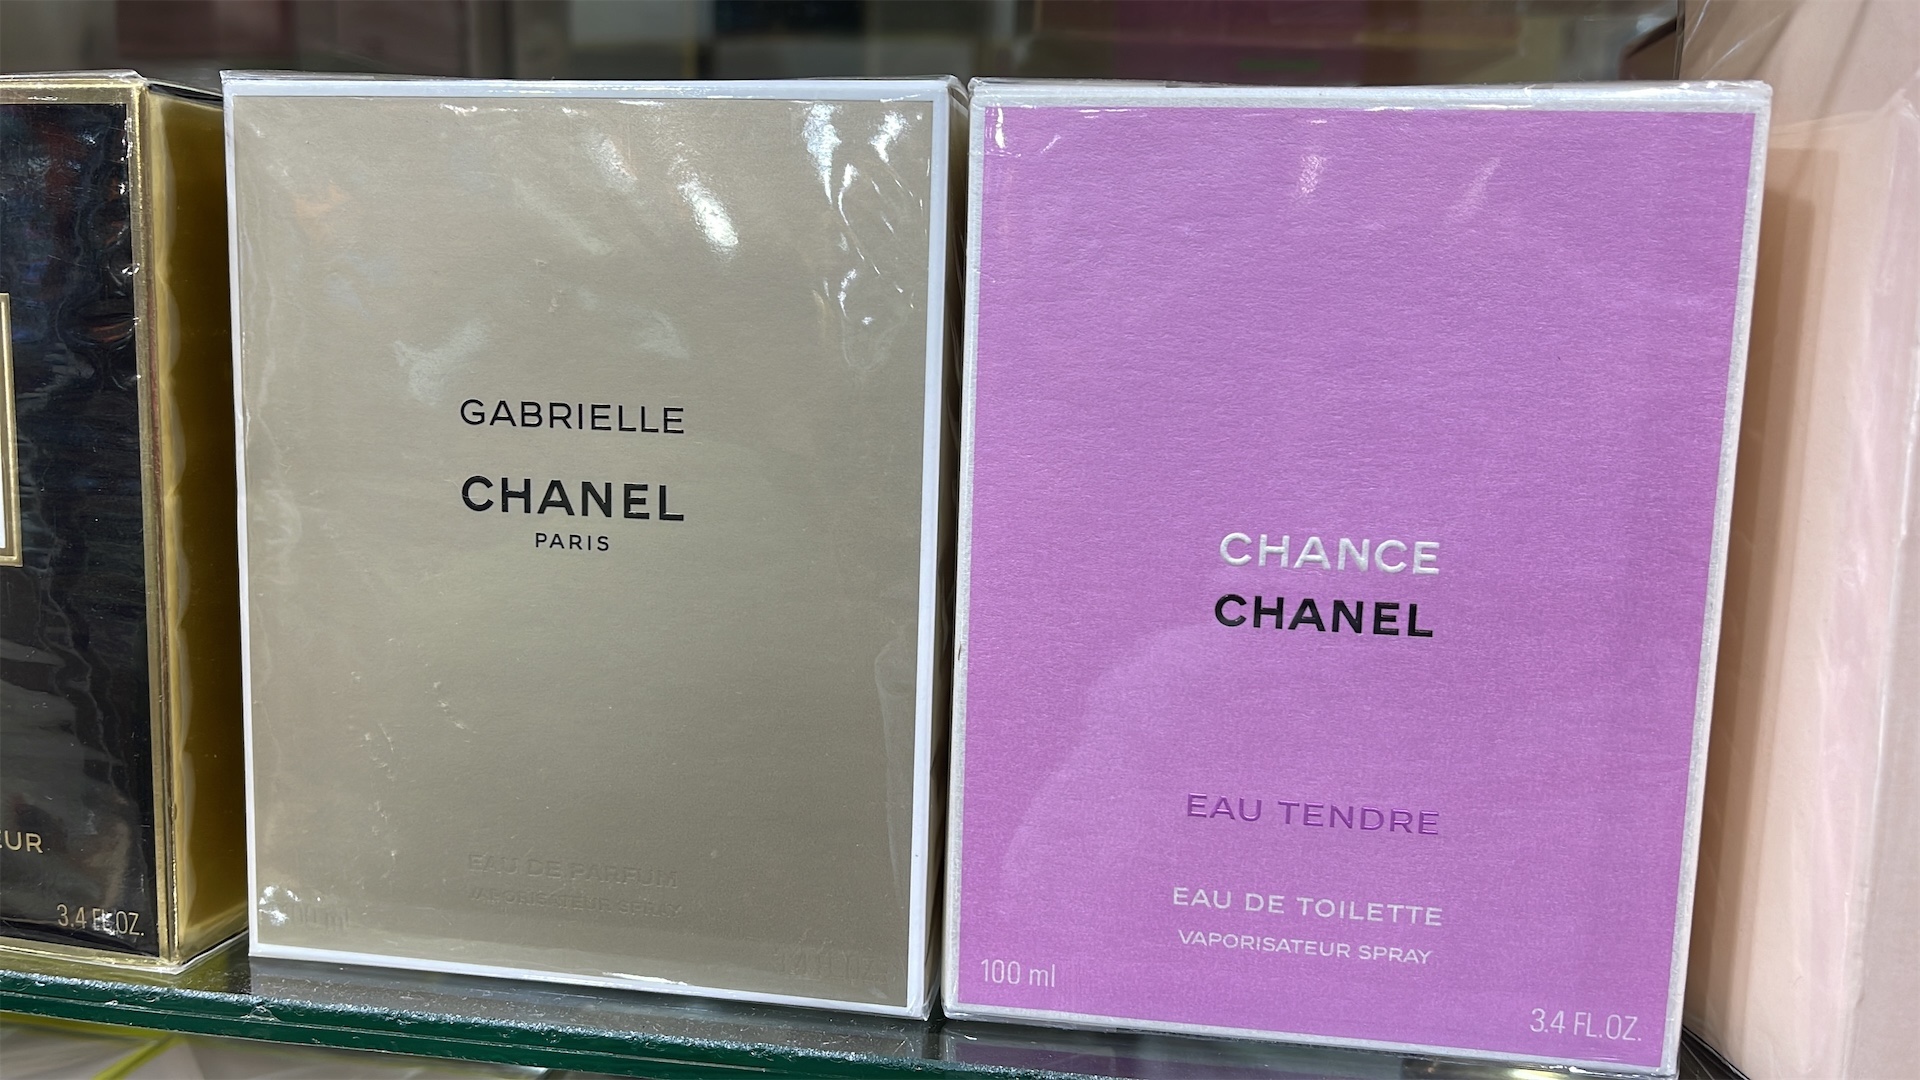 salud y belleza - Perfume Grabriele Chanel. AL POR MAYOR Y AL DETALLE